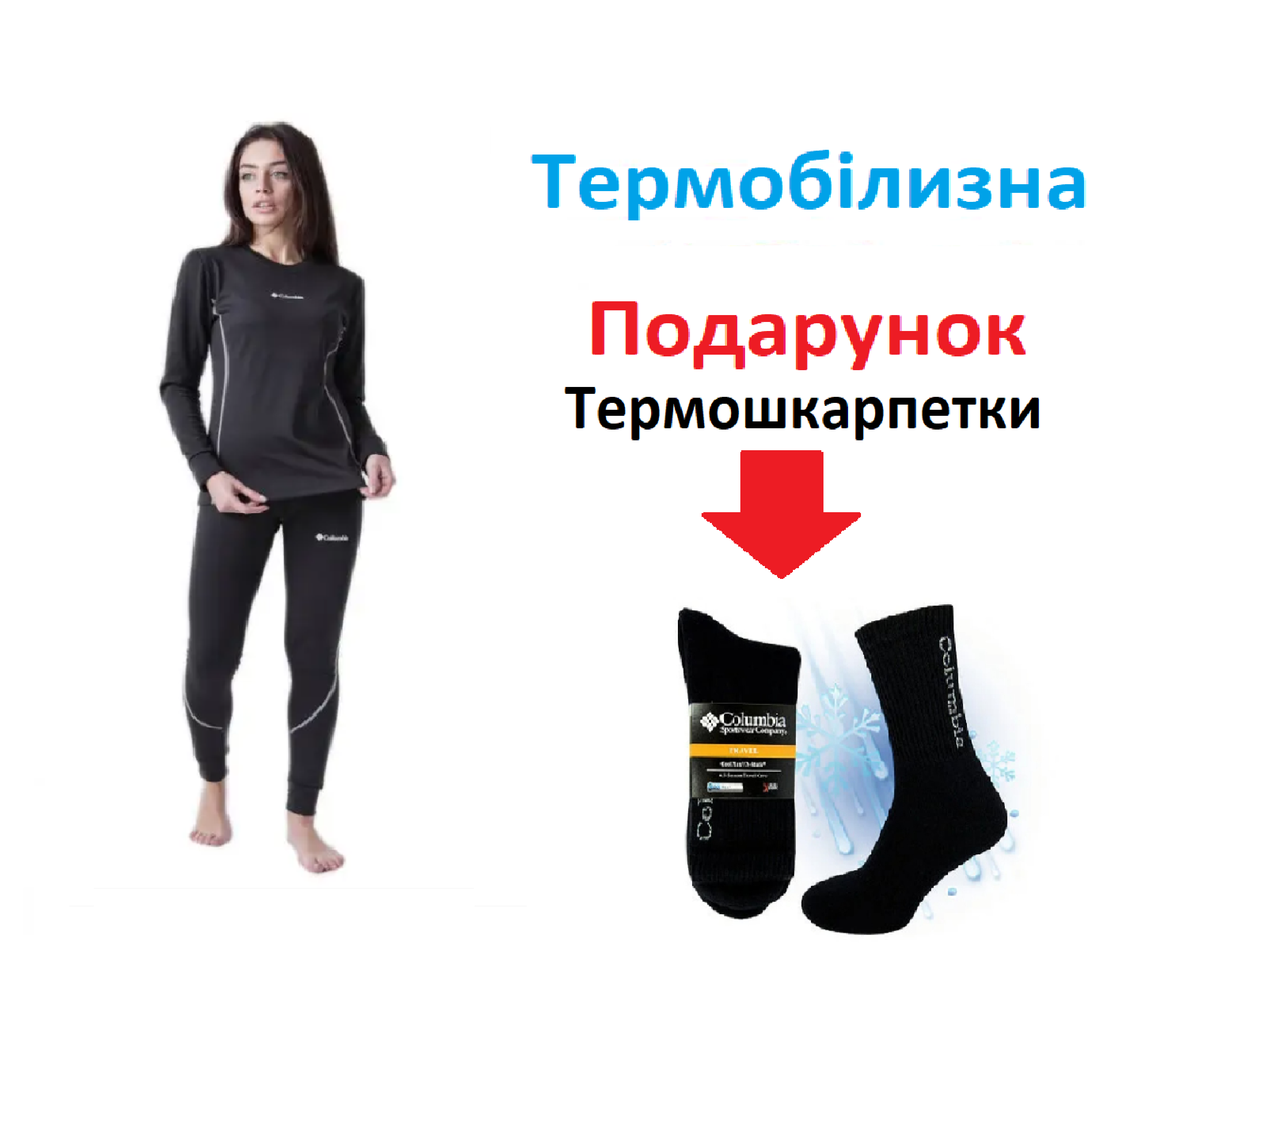 Жіноча термобілизна Columbia  L + подарунок термошкарпетки